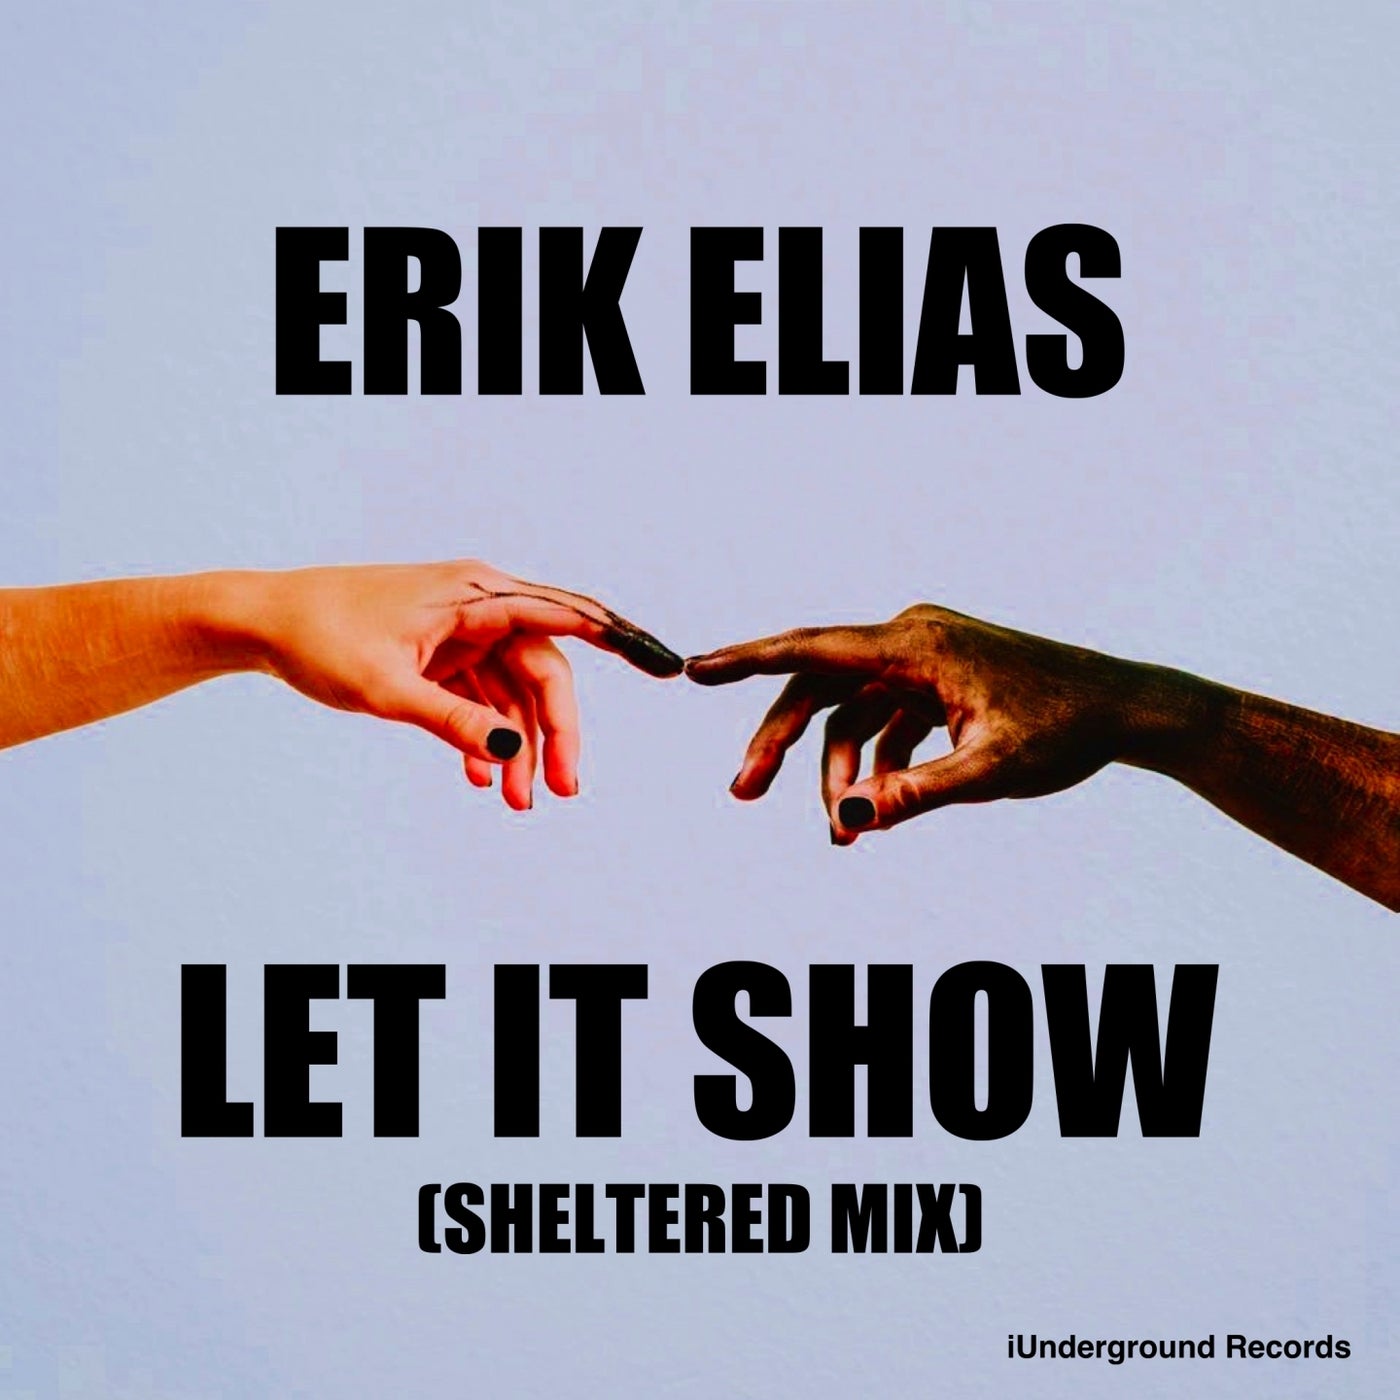 Erik Elias - Let It Show (Sheltered Mix) [iUnderground Records]